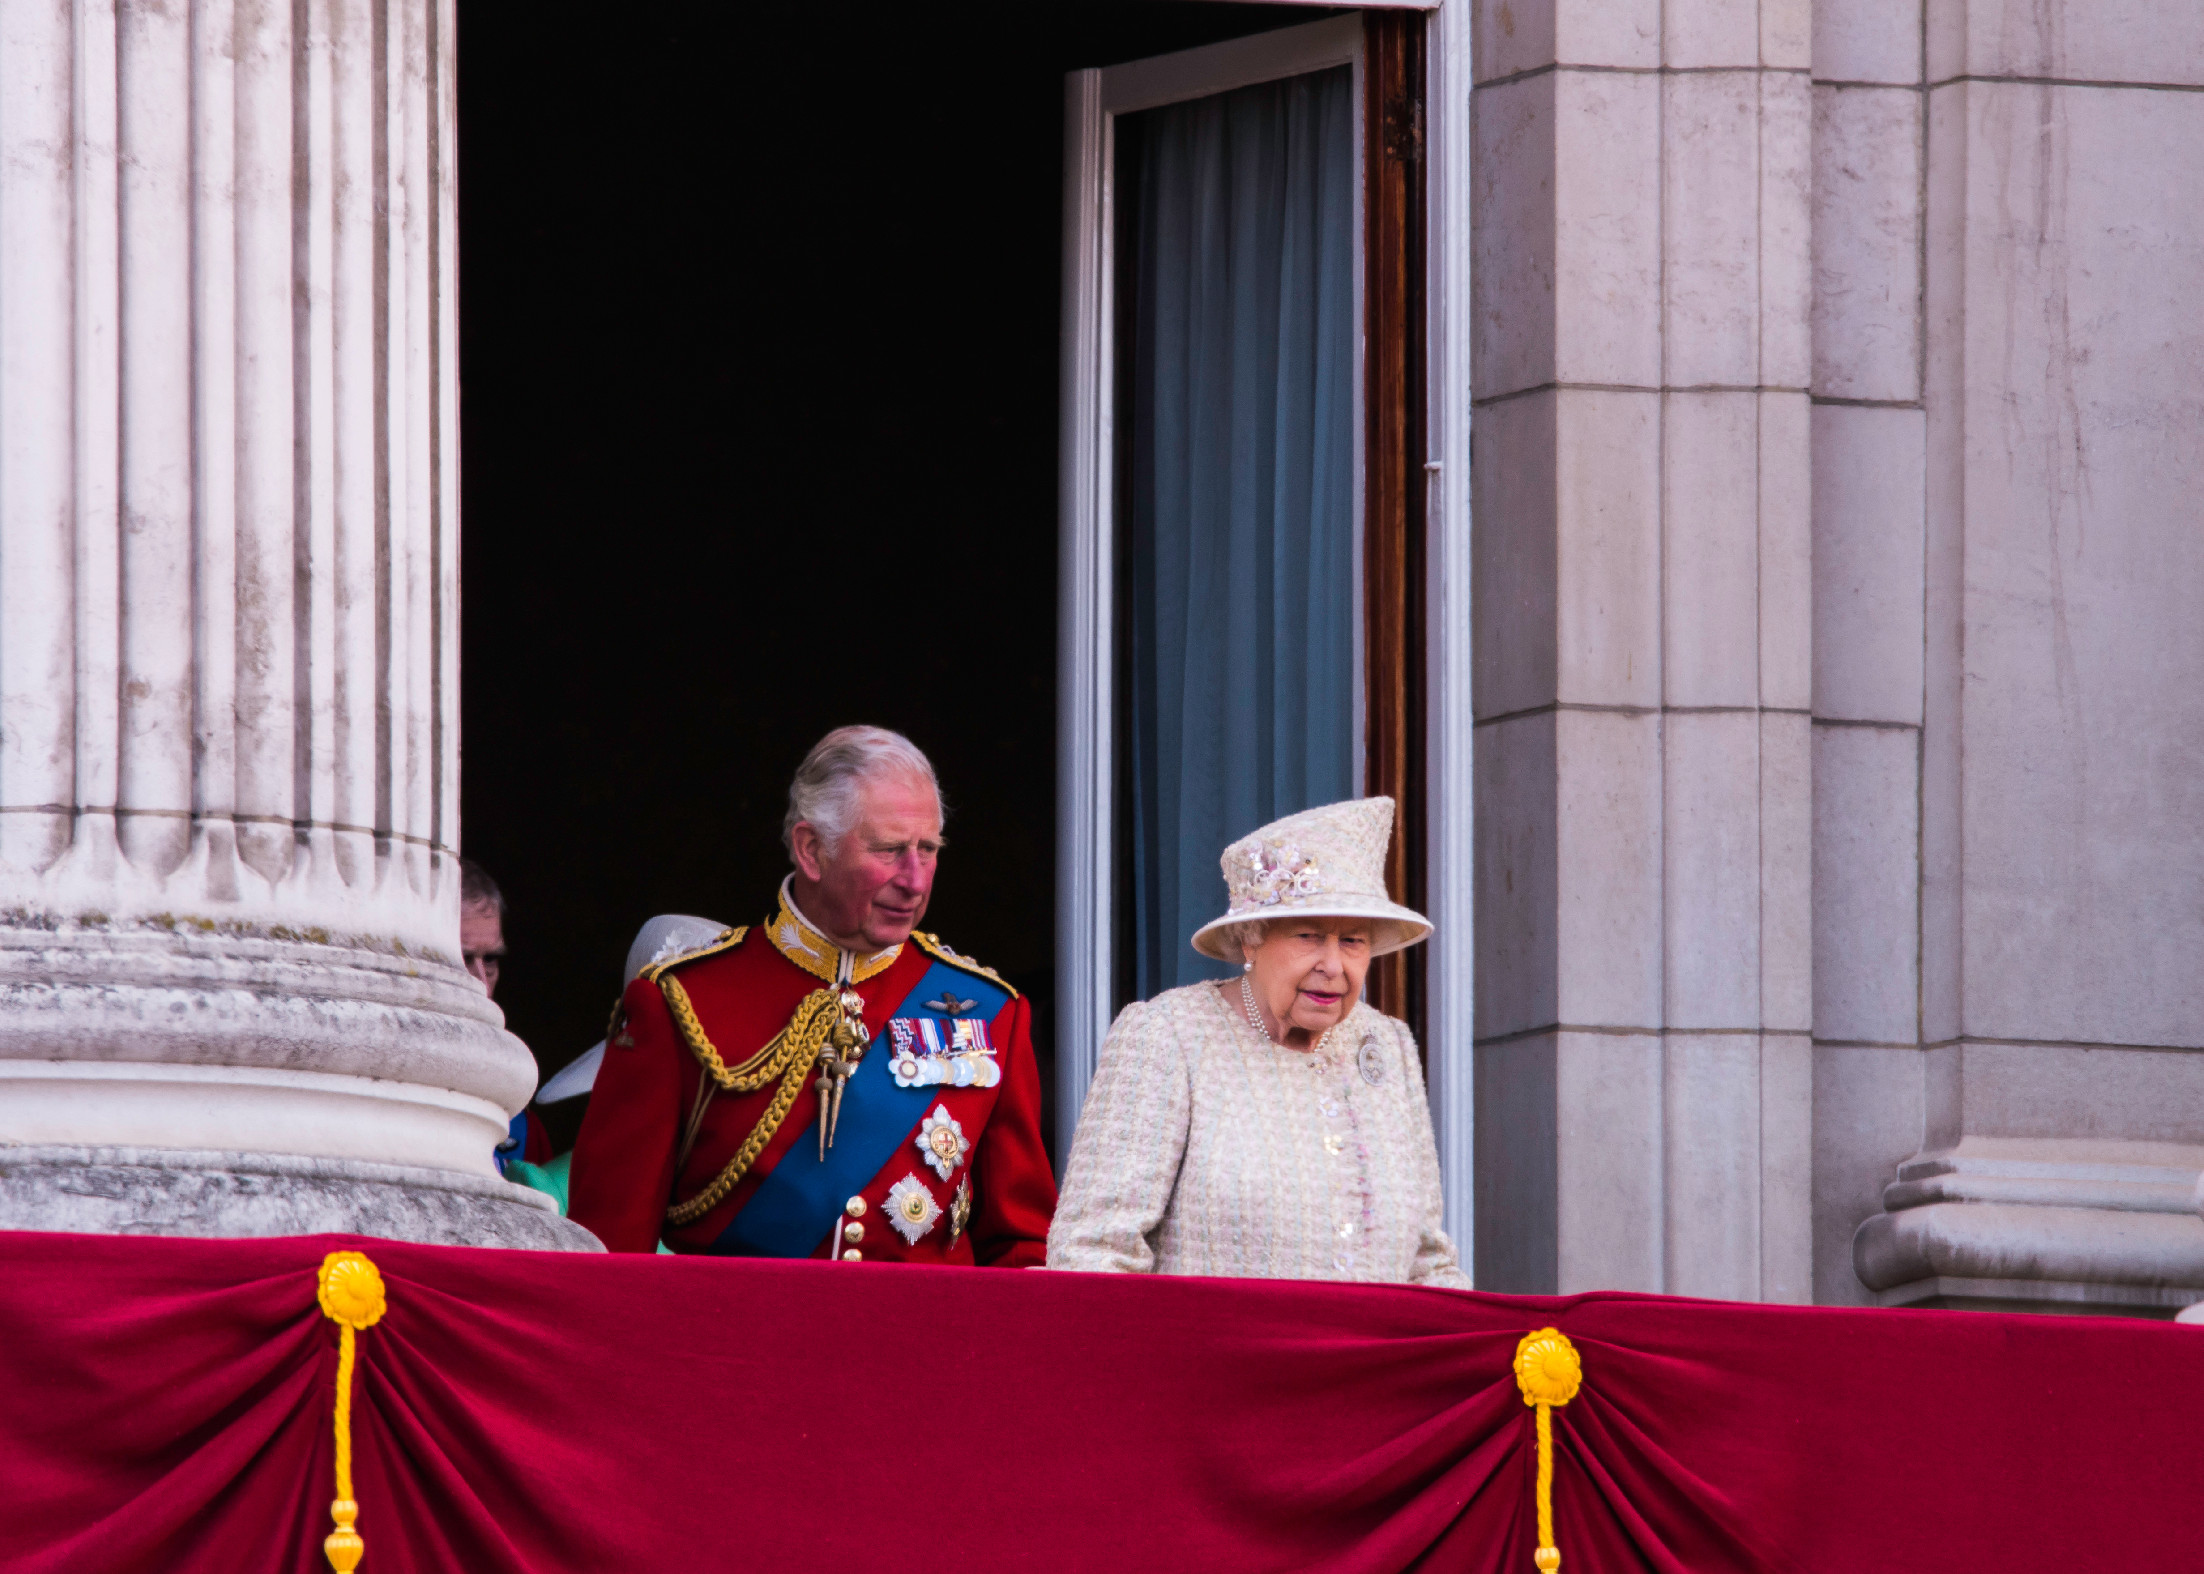 Mit szólna ehhez Erzsébet királynő? Károly király az édesanyja egyik legfontosabb hagyományát töri meg